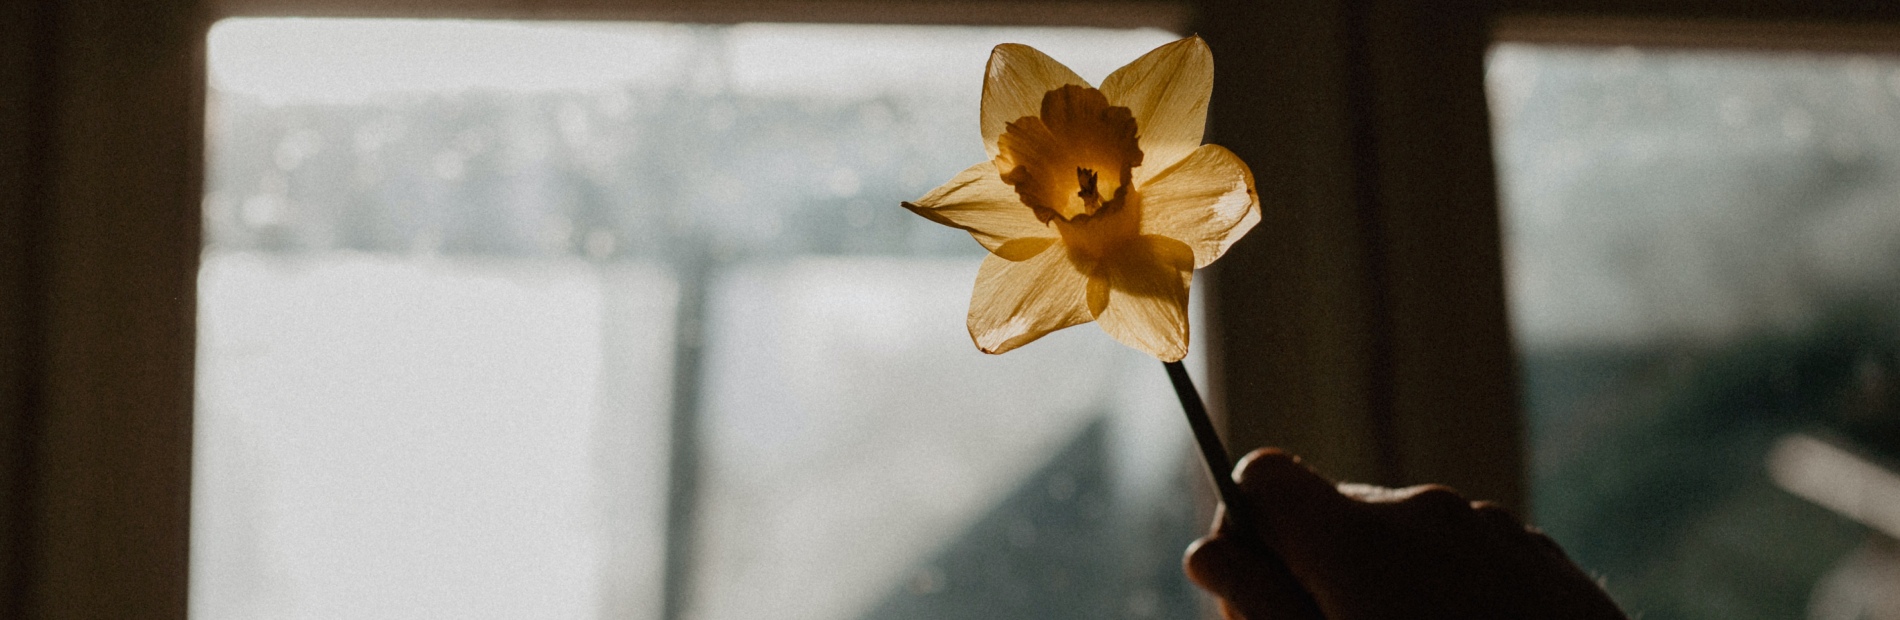 Hand håller upp en gul narciss mot ljuset från ett fläckigt fönster.